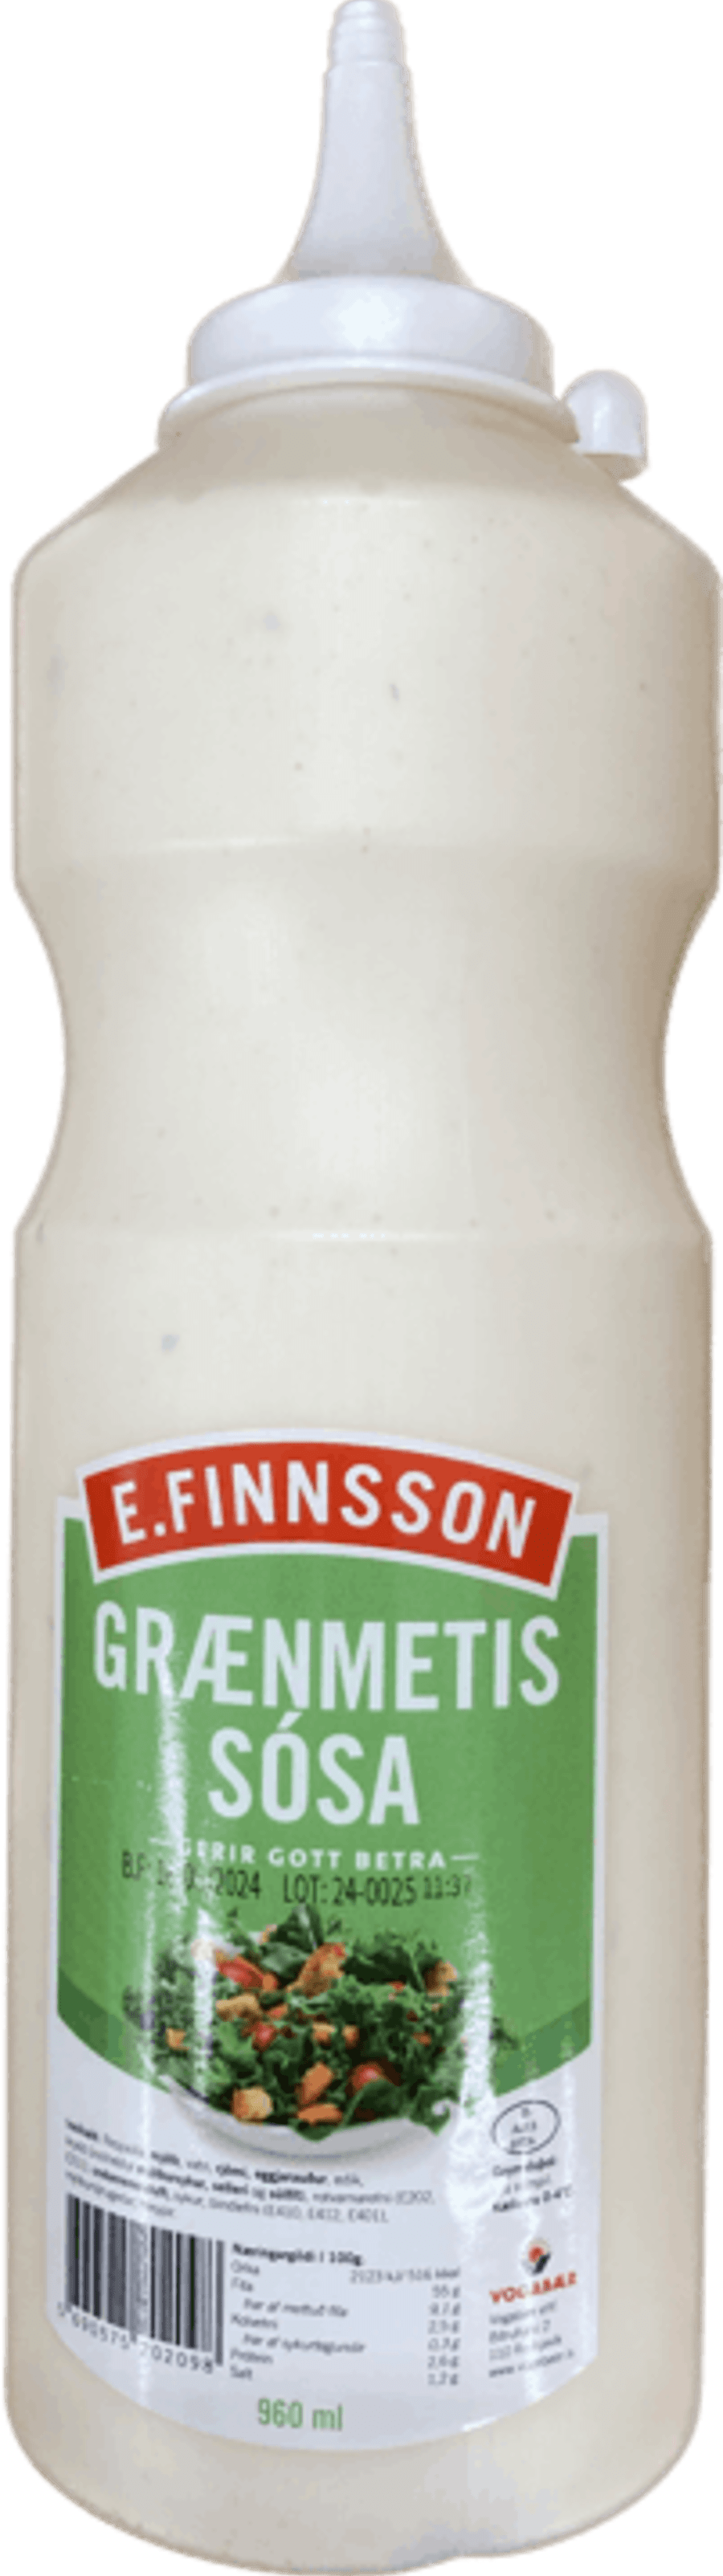 E.finnsson sósa grænmeti 960 ml